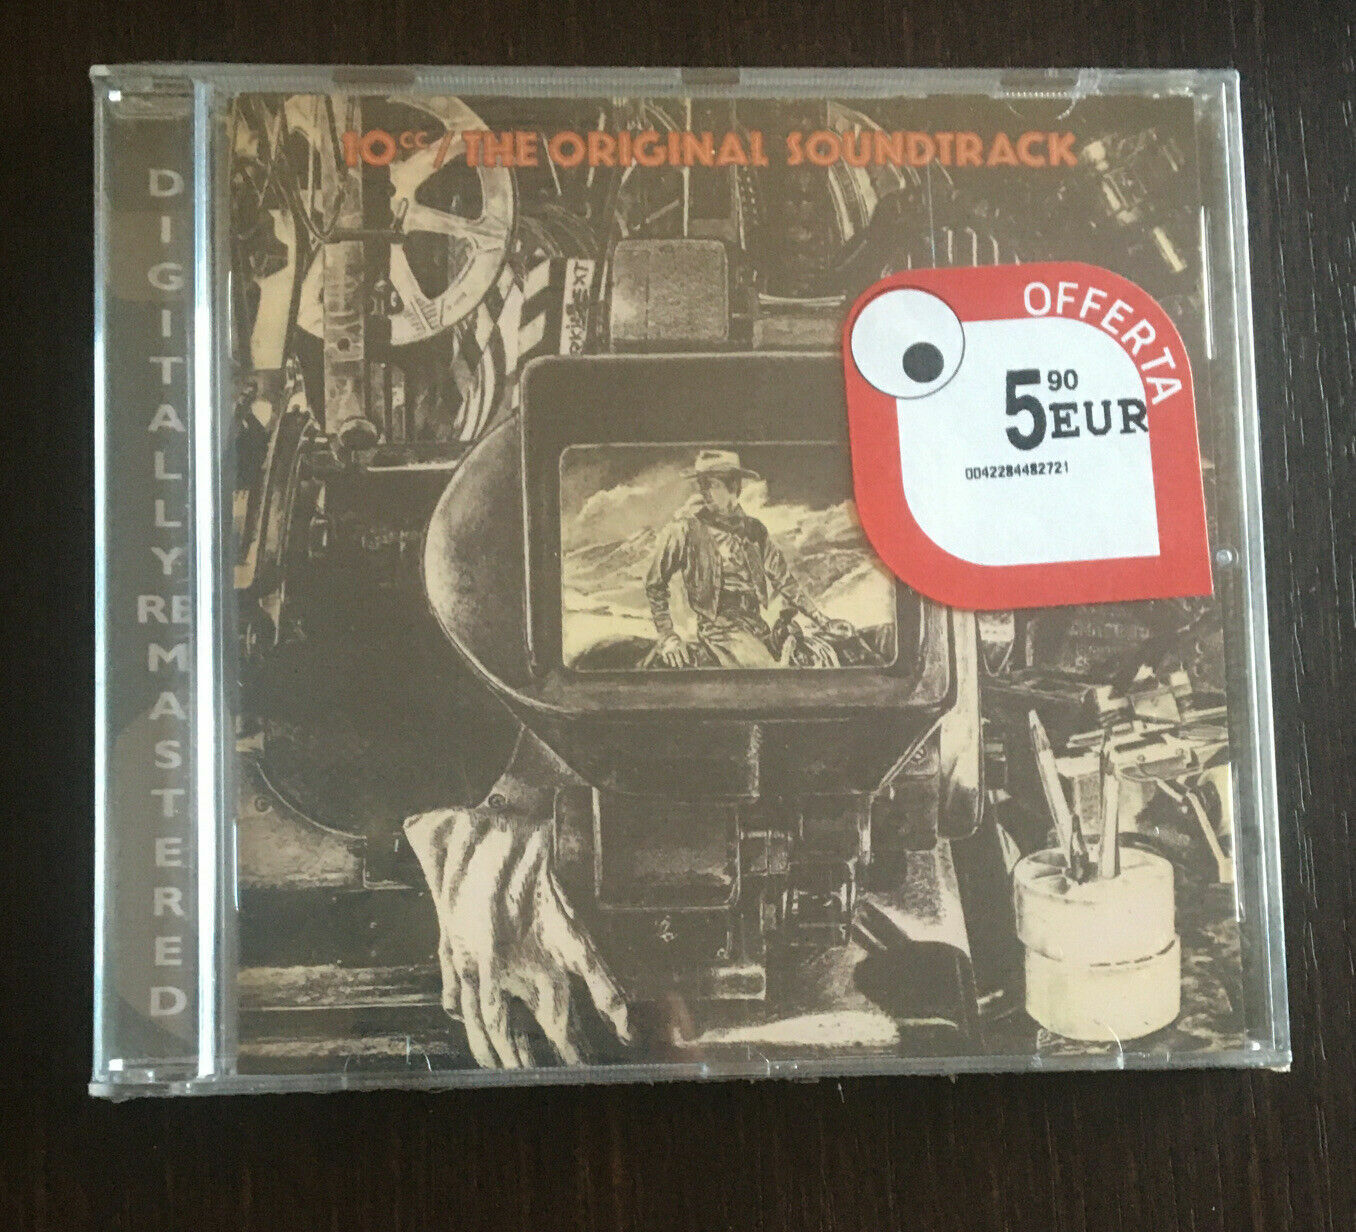 10cc - The Original Soundtrack (1996)